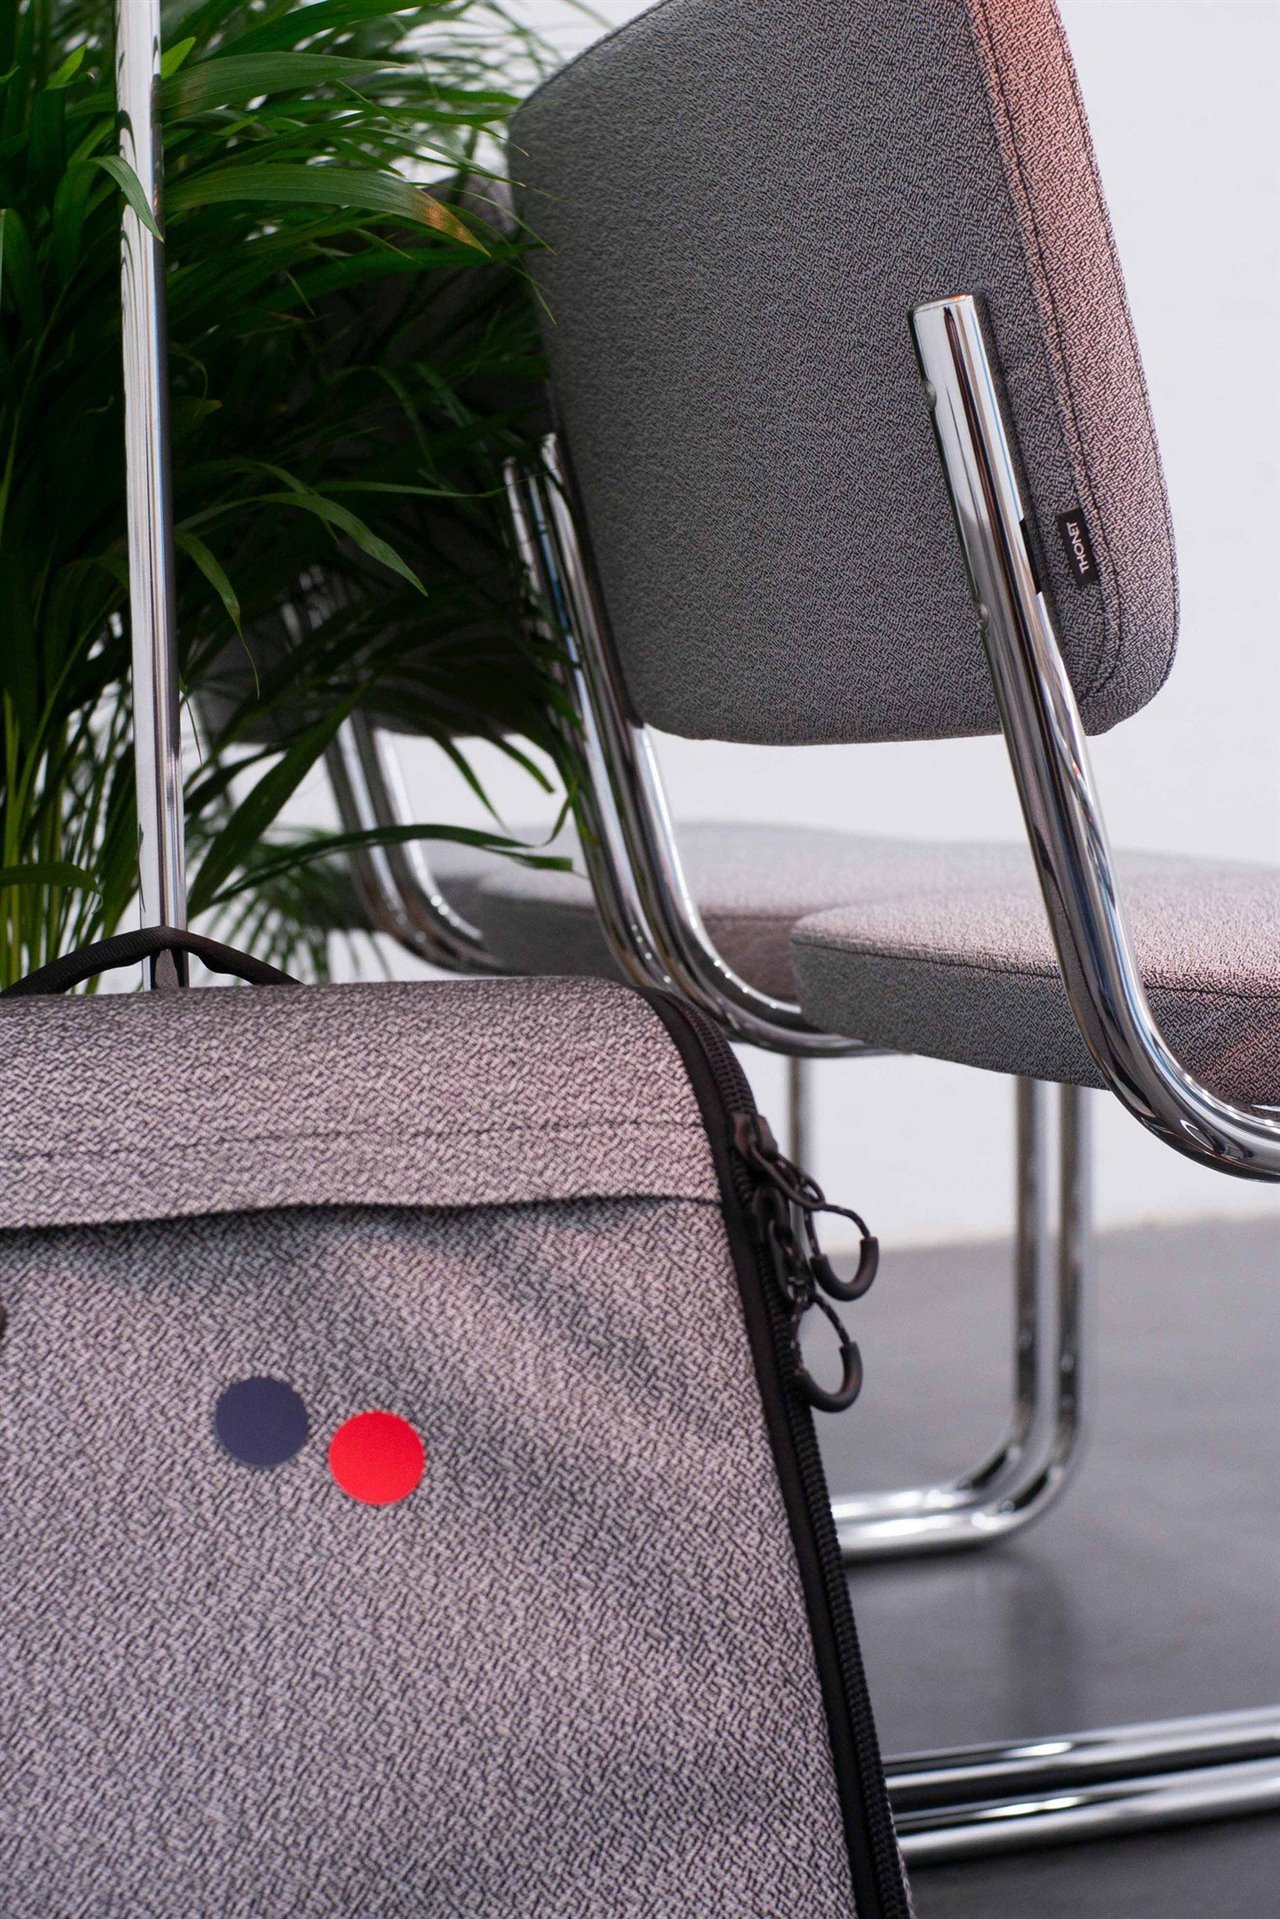 La versión de la silla Freischwinger desarrollada por pinqponq emplea plástico 100% reciclado de botellas para el asiento y el respaldo, que cuentan con el diseño de tapicería característico de este fabricante alemán, el dibujo «Vivid Monochrome» inspirado por las «bacterias» de Ettore Sottsass.